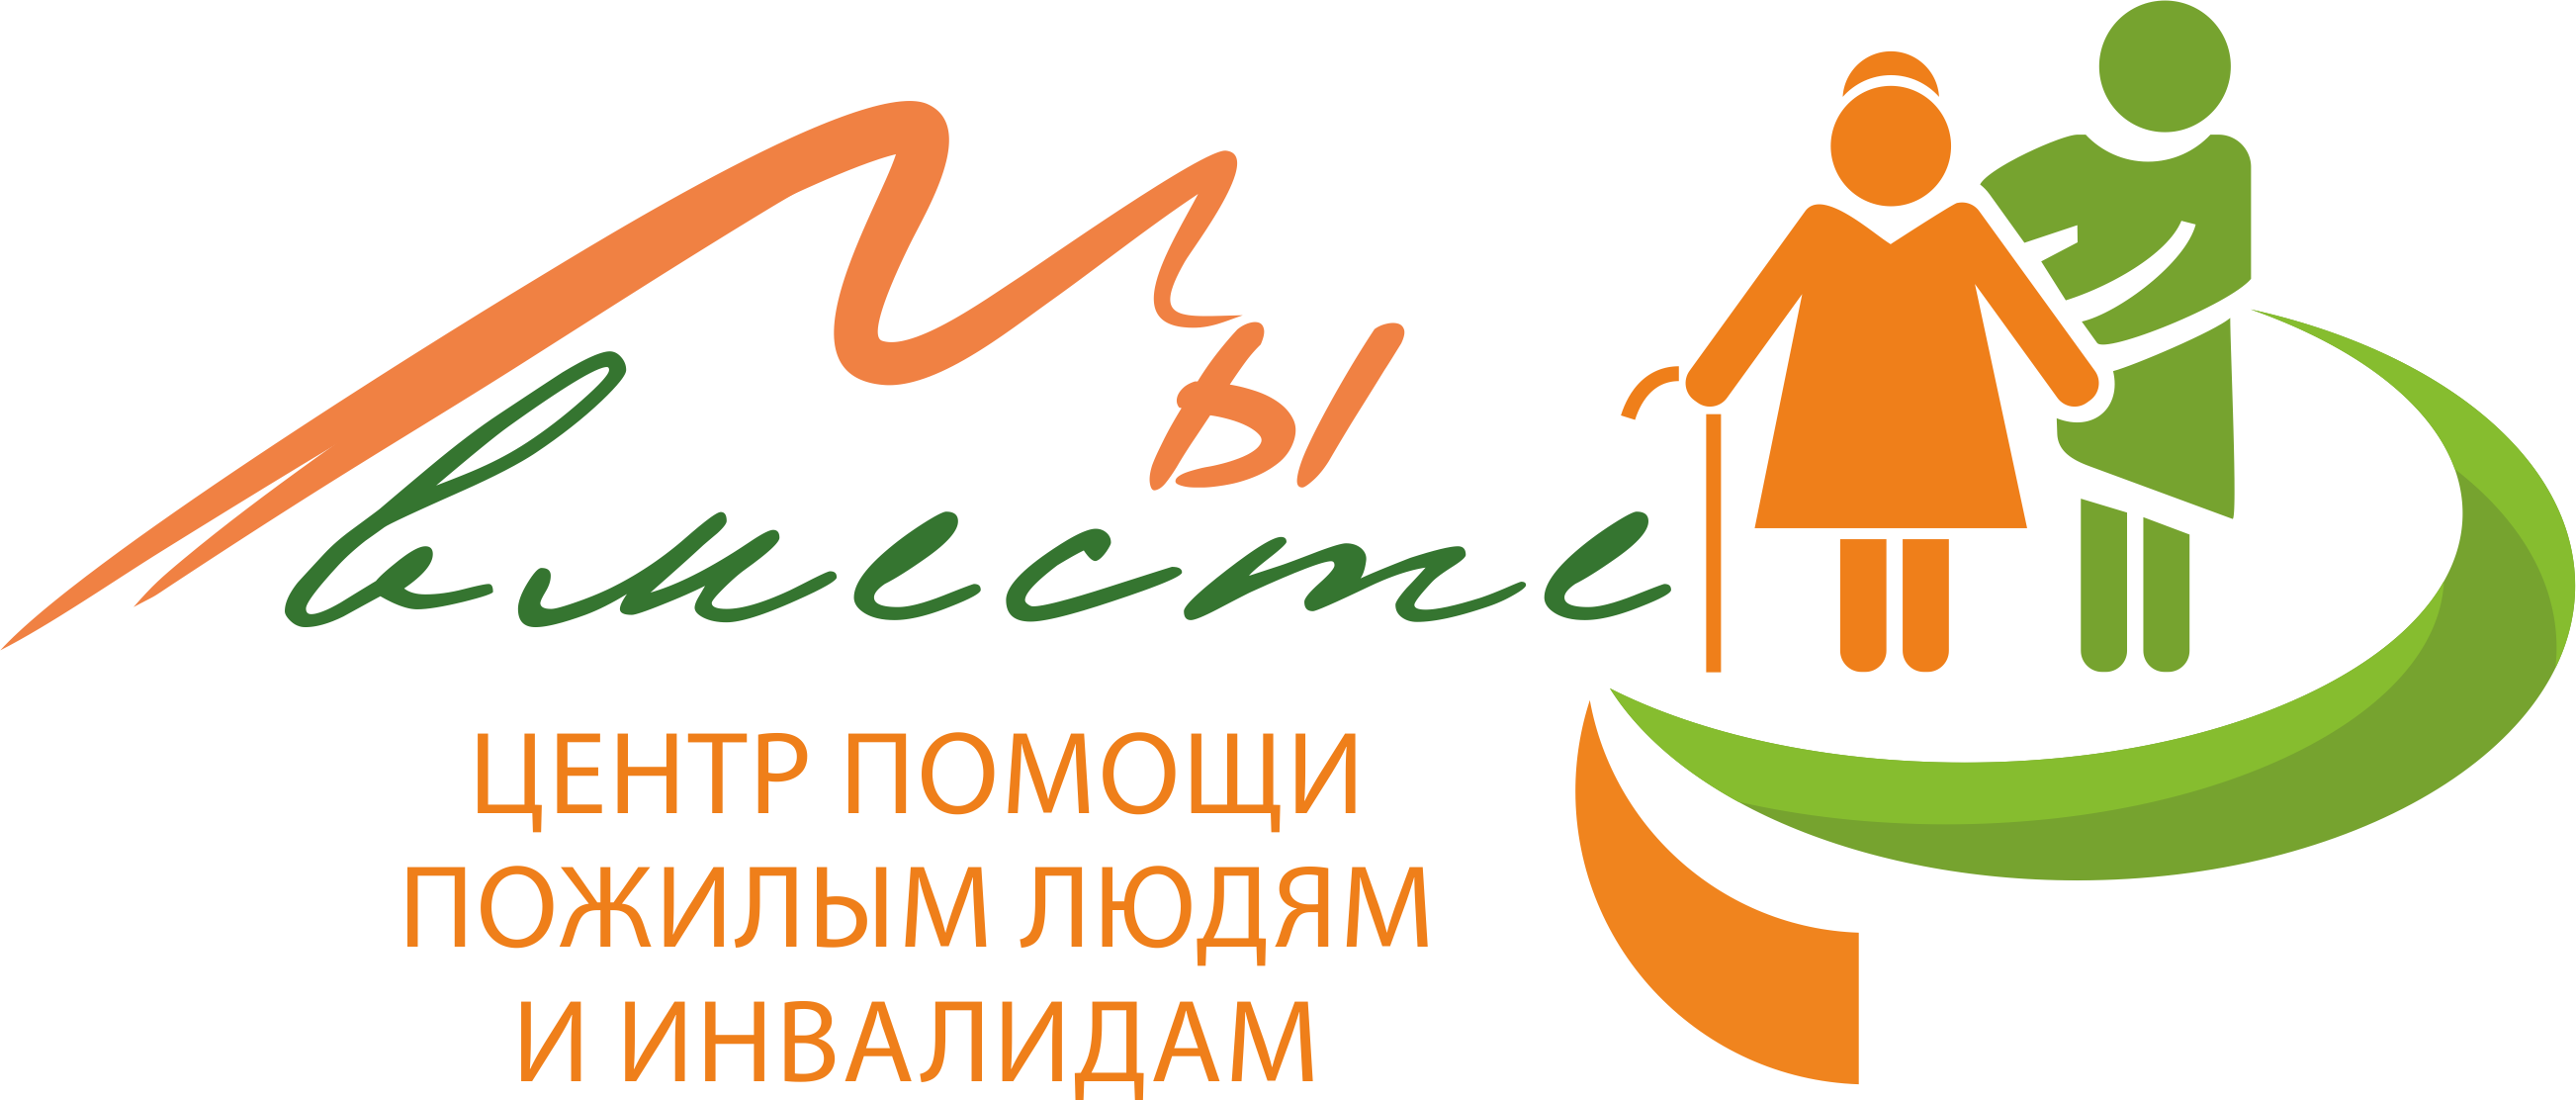 Эмблема для престарелых и инвалидов. Логотип пожилые люди. Помощь пожилым логотип. Эмблема для Стариков и инвалидов. Благотворительные организации инвалидов